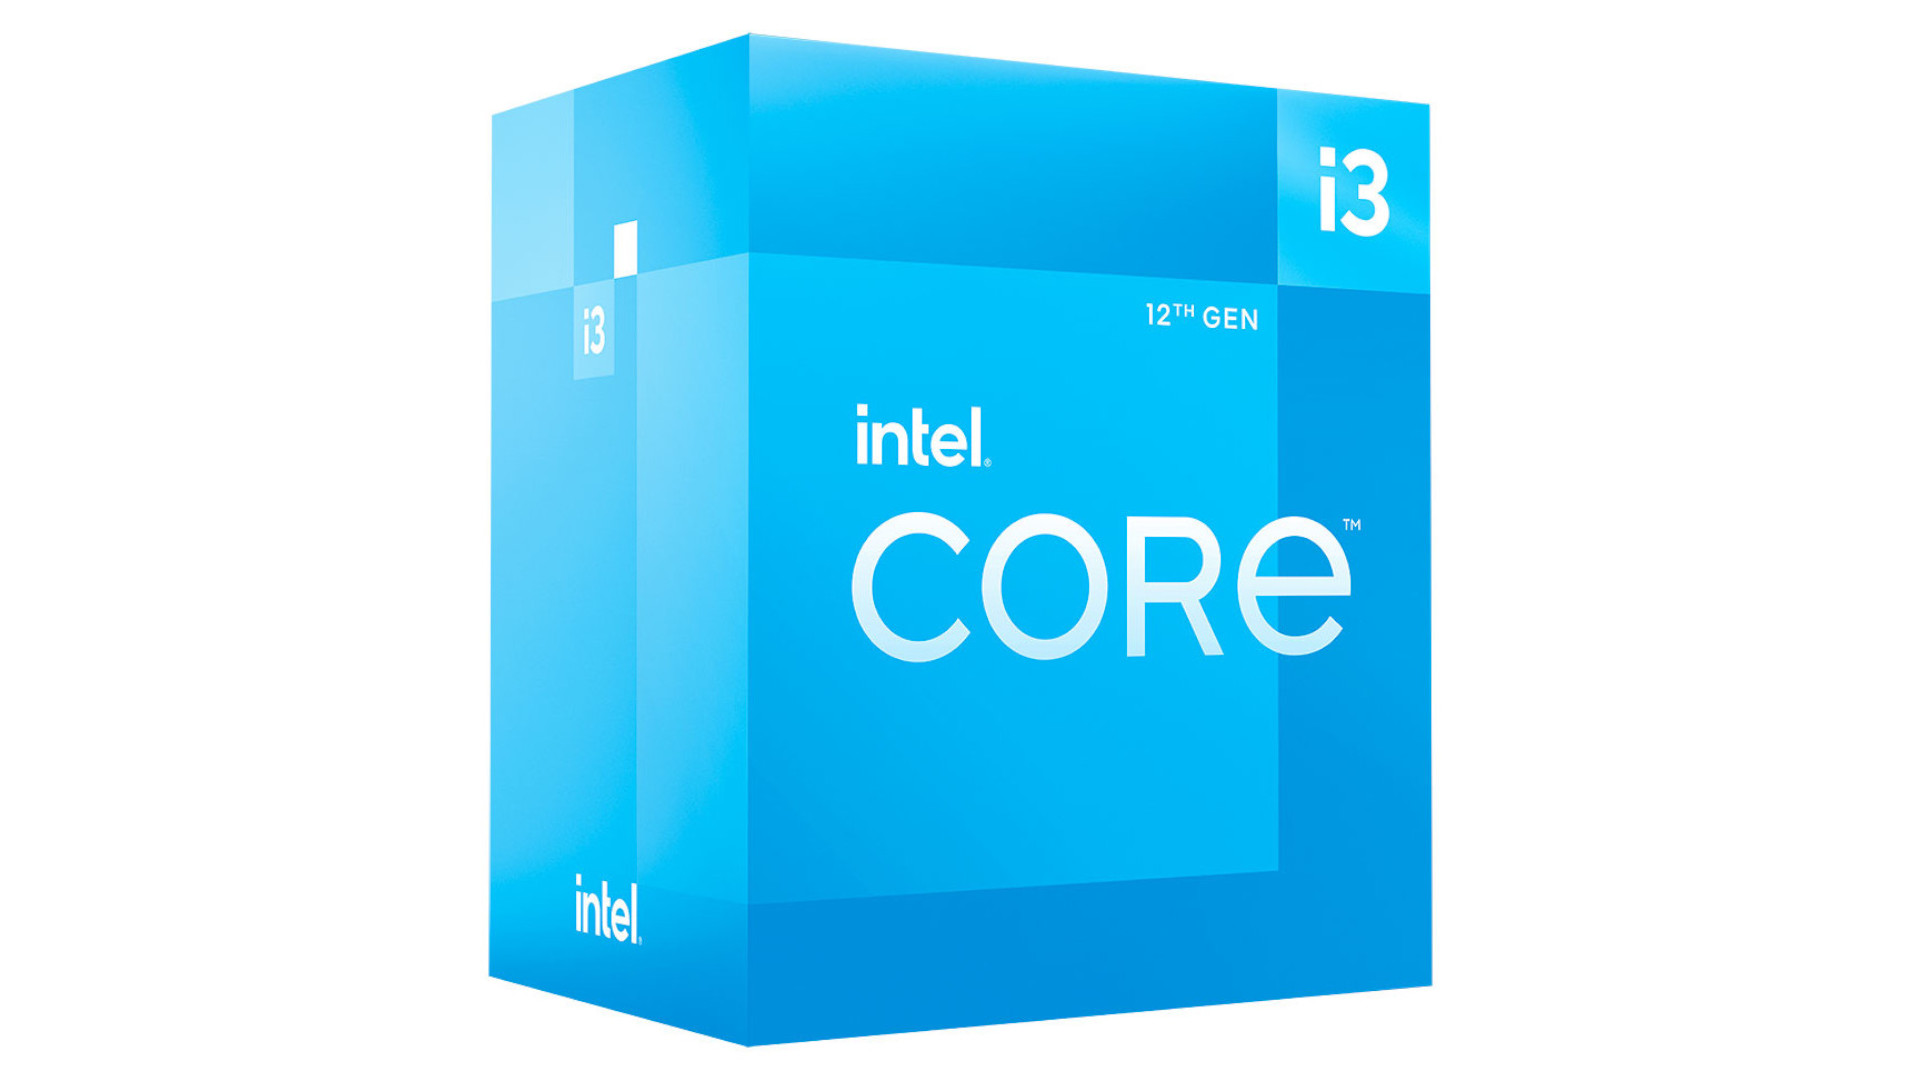 De beste goedkope gaming CPU is de Intel Core i3 12100